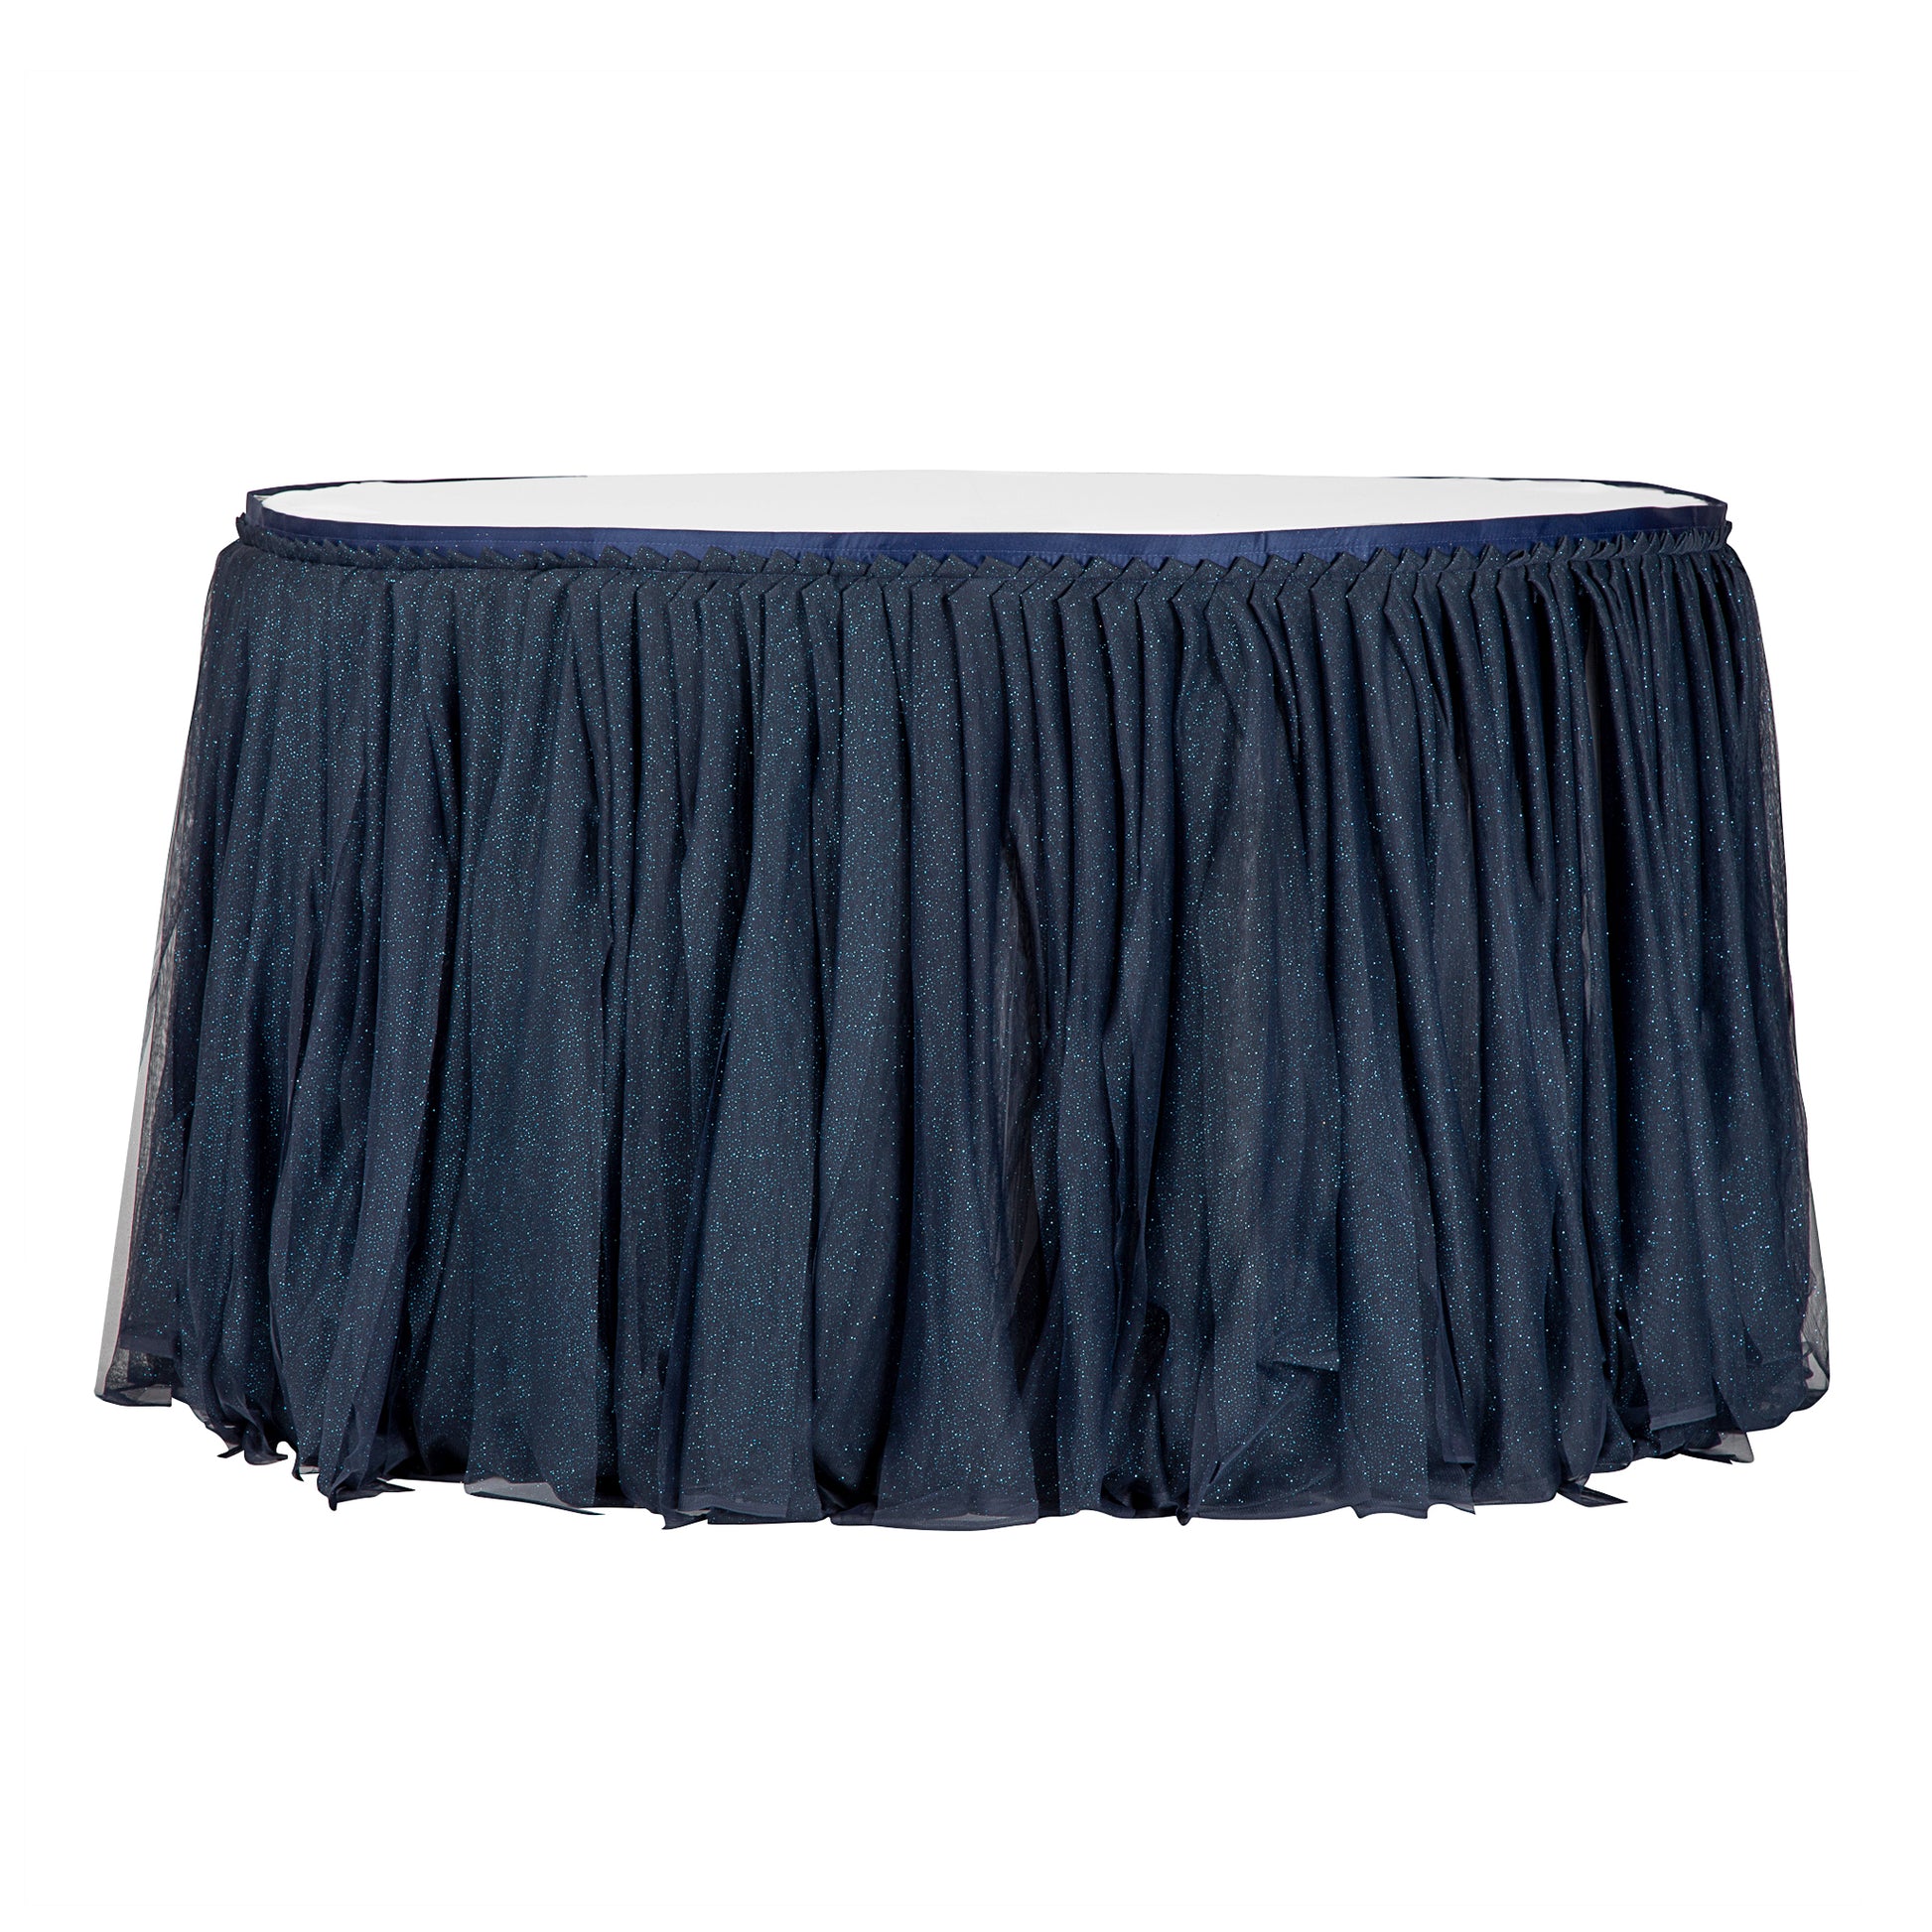 Glitter Tulle Tutu 17ft Table Skirt - Navy Blue - CV Linens